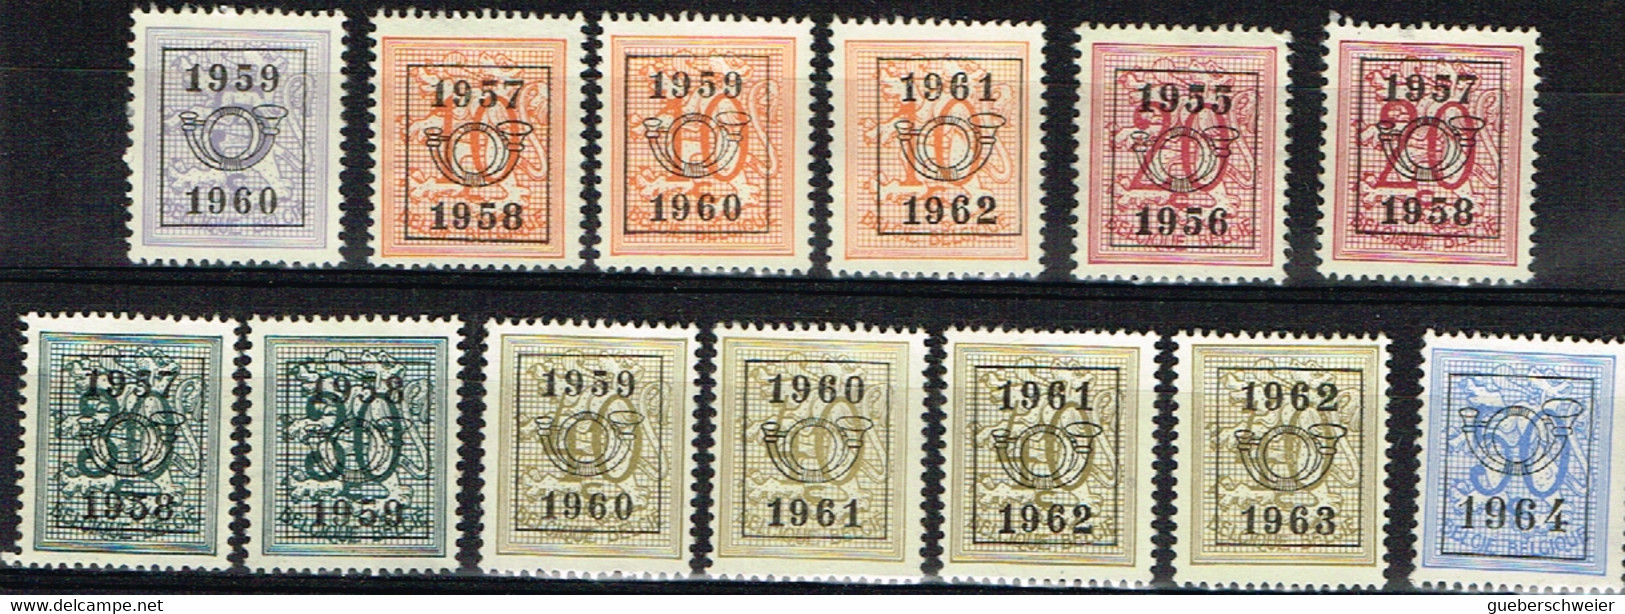 B 83 - BELGIQUE Lot De 13 Timbres Préoblitérés Différents - Typos 1967-85 (Löwe Und Banderole)